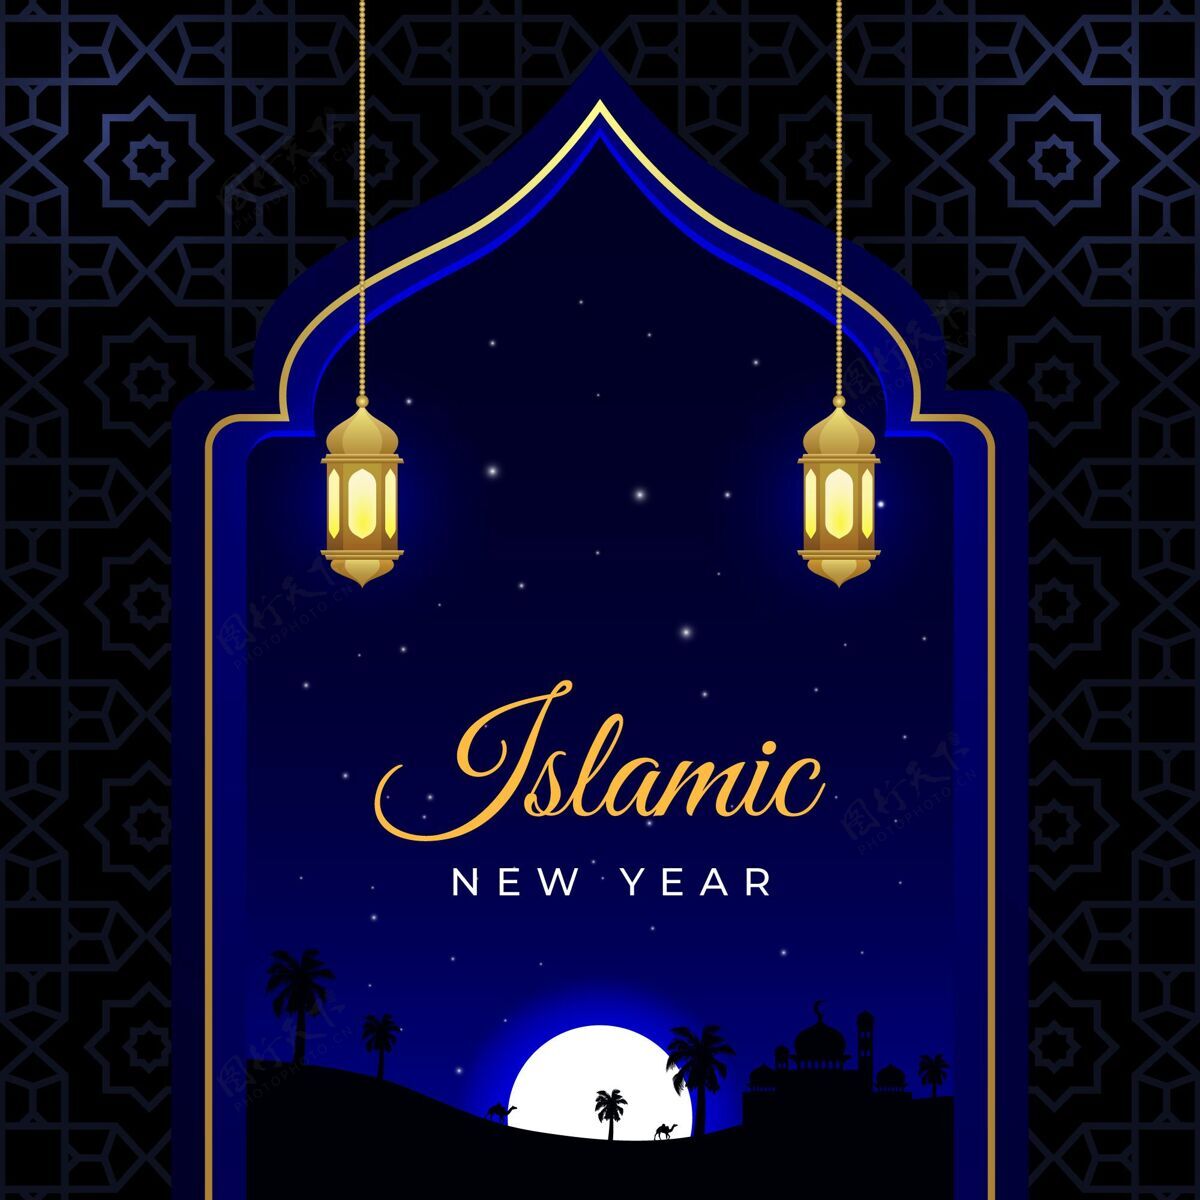 新年现实伊斯兰新年插画事件伊斯兰现实主义